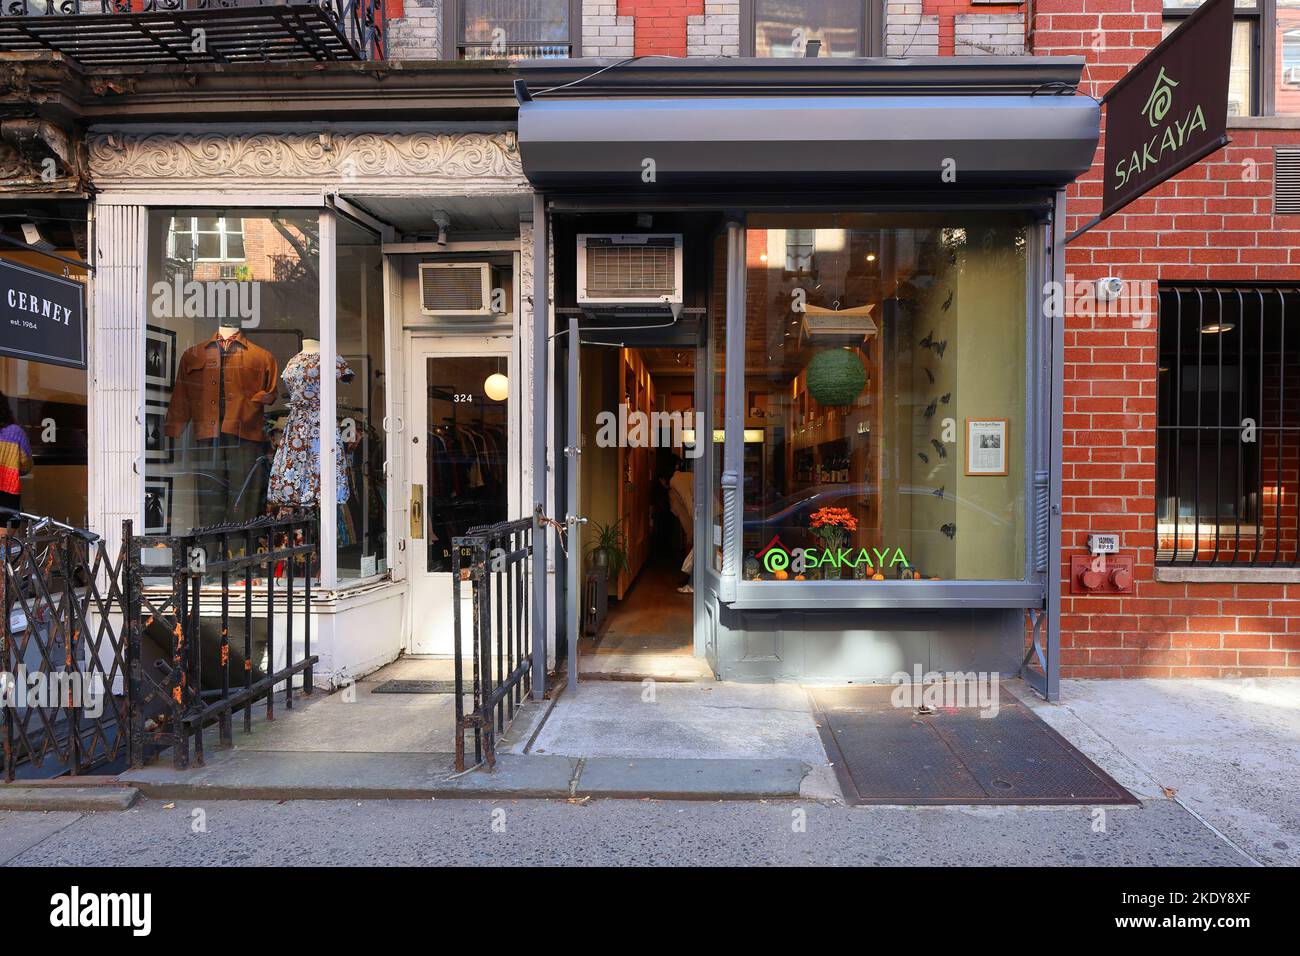 Sakaya, 324 E 9. St, New York, NYC Schaufensterfoto eines Sake- und Soju-Ladens in Manhattans East Village Stockfoto